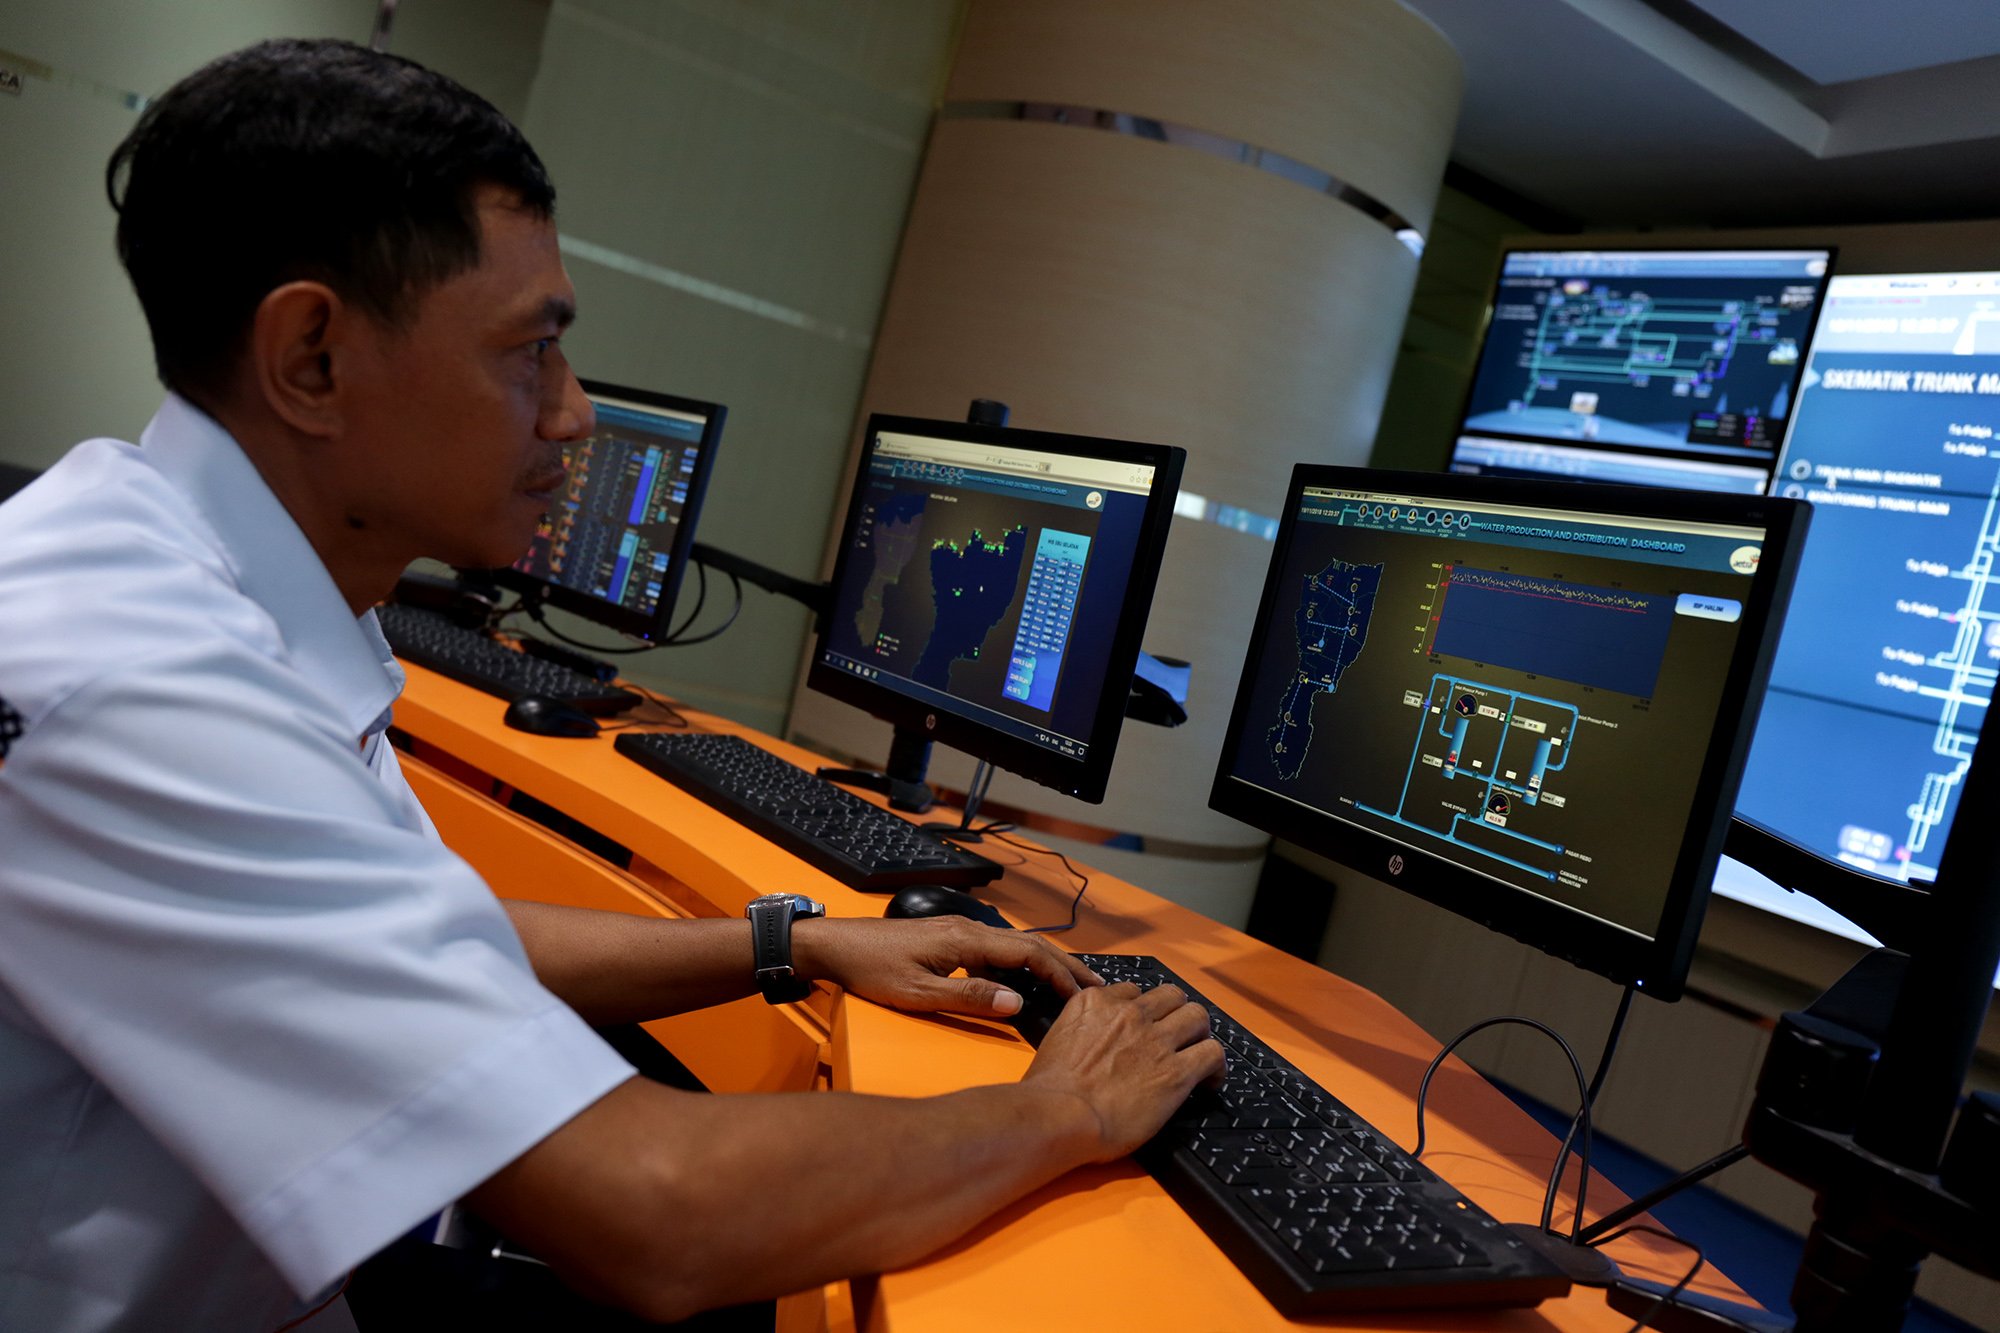 Petugas berada di ruang kontrol di Intalasi Pengelola Air Buaran PT Aetra Jakarta Timur (19/11). Ruang kontrol ini bertujuan untuk pengecekan kondisi air di seluruh pipa instalasi yang sedang menjalani proses.